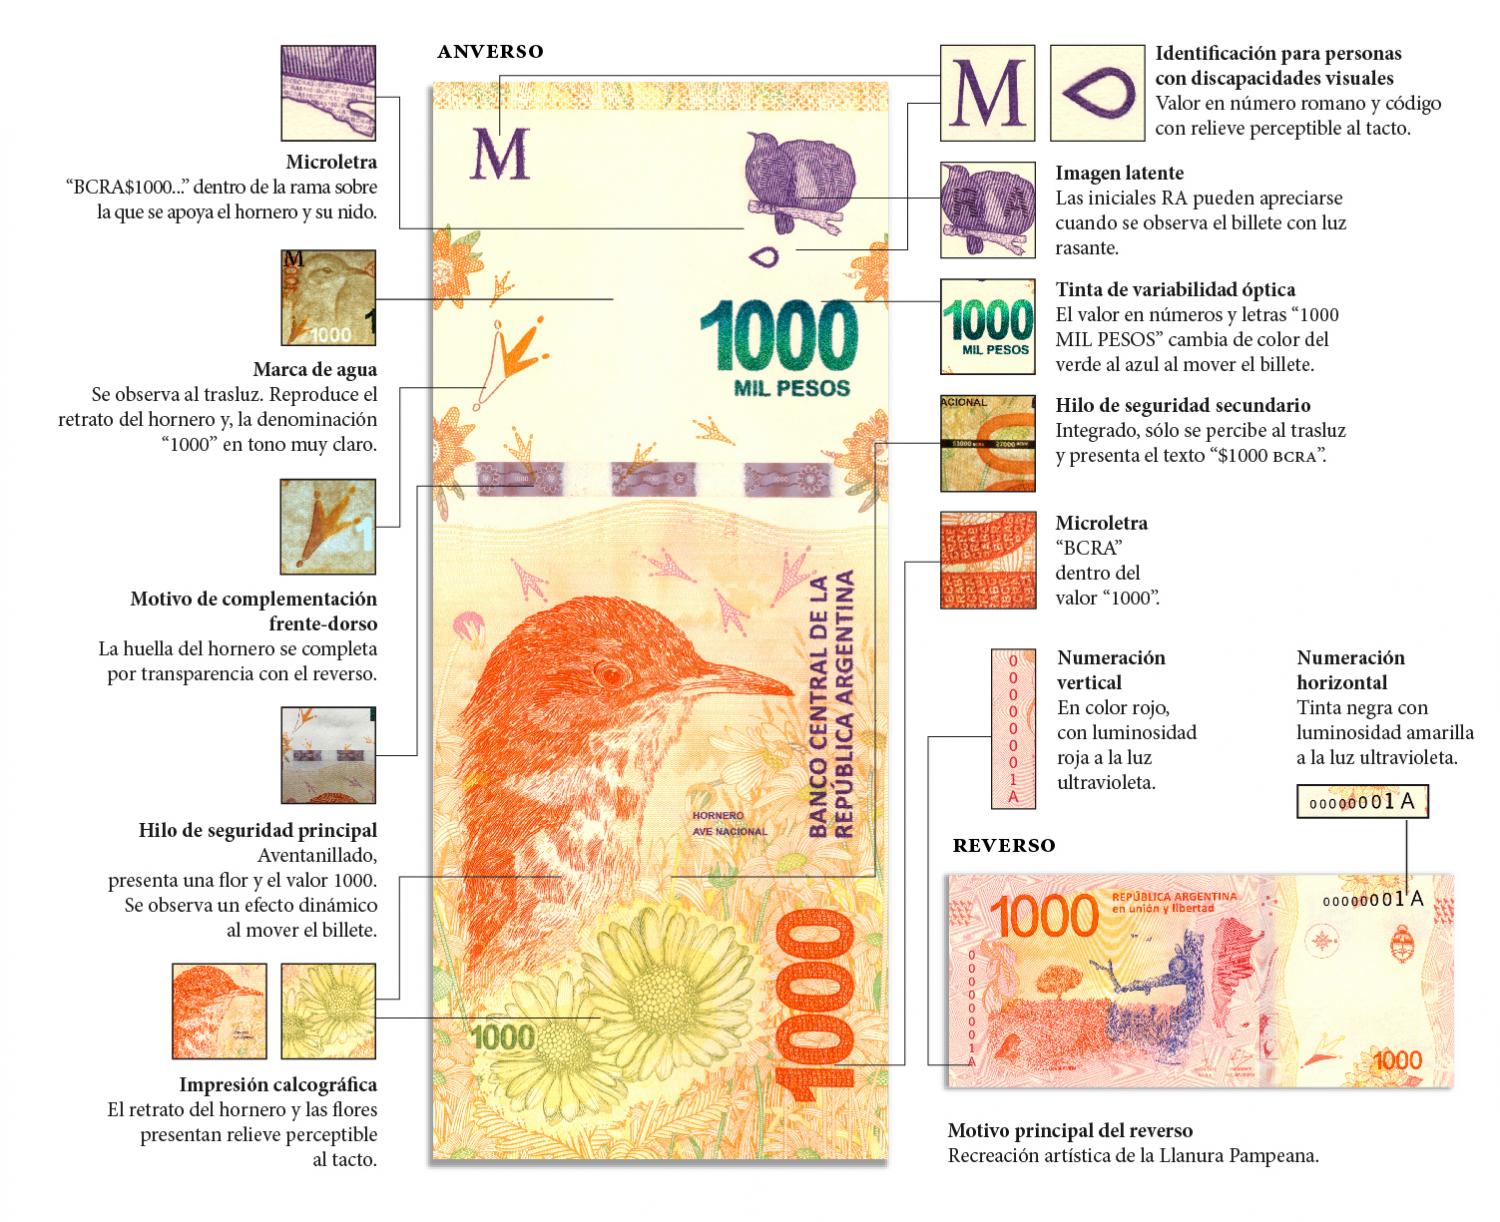 Advierten sobre los billetes de $ 1.000 falsos: qué hay que saber para detectarlos